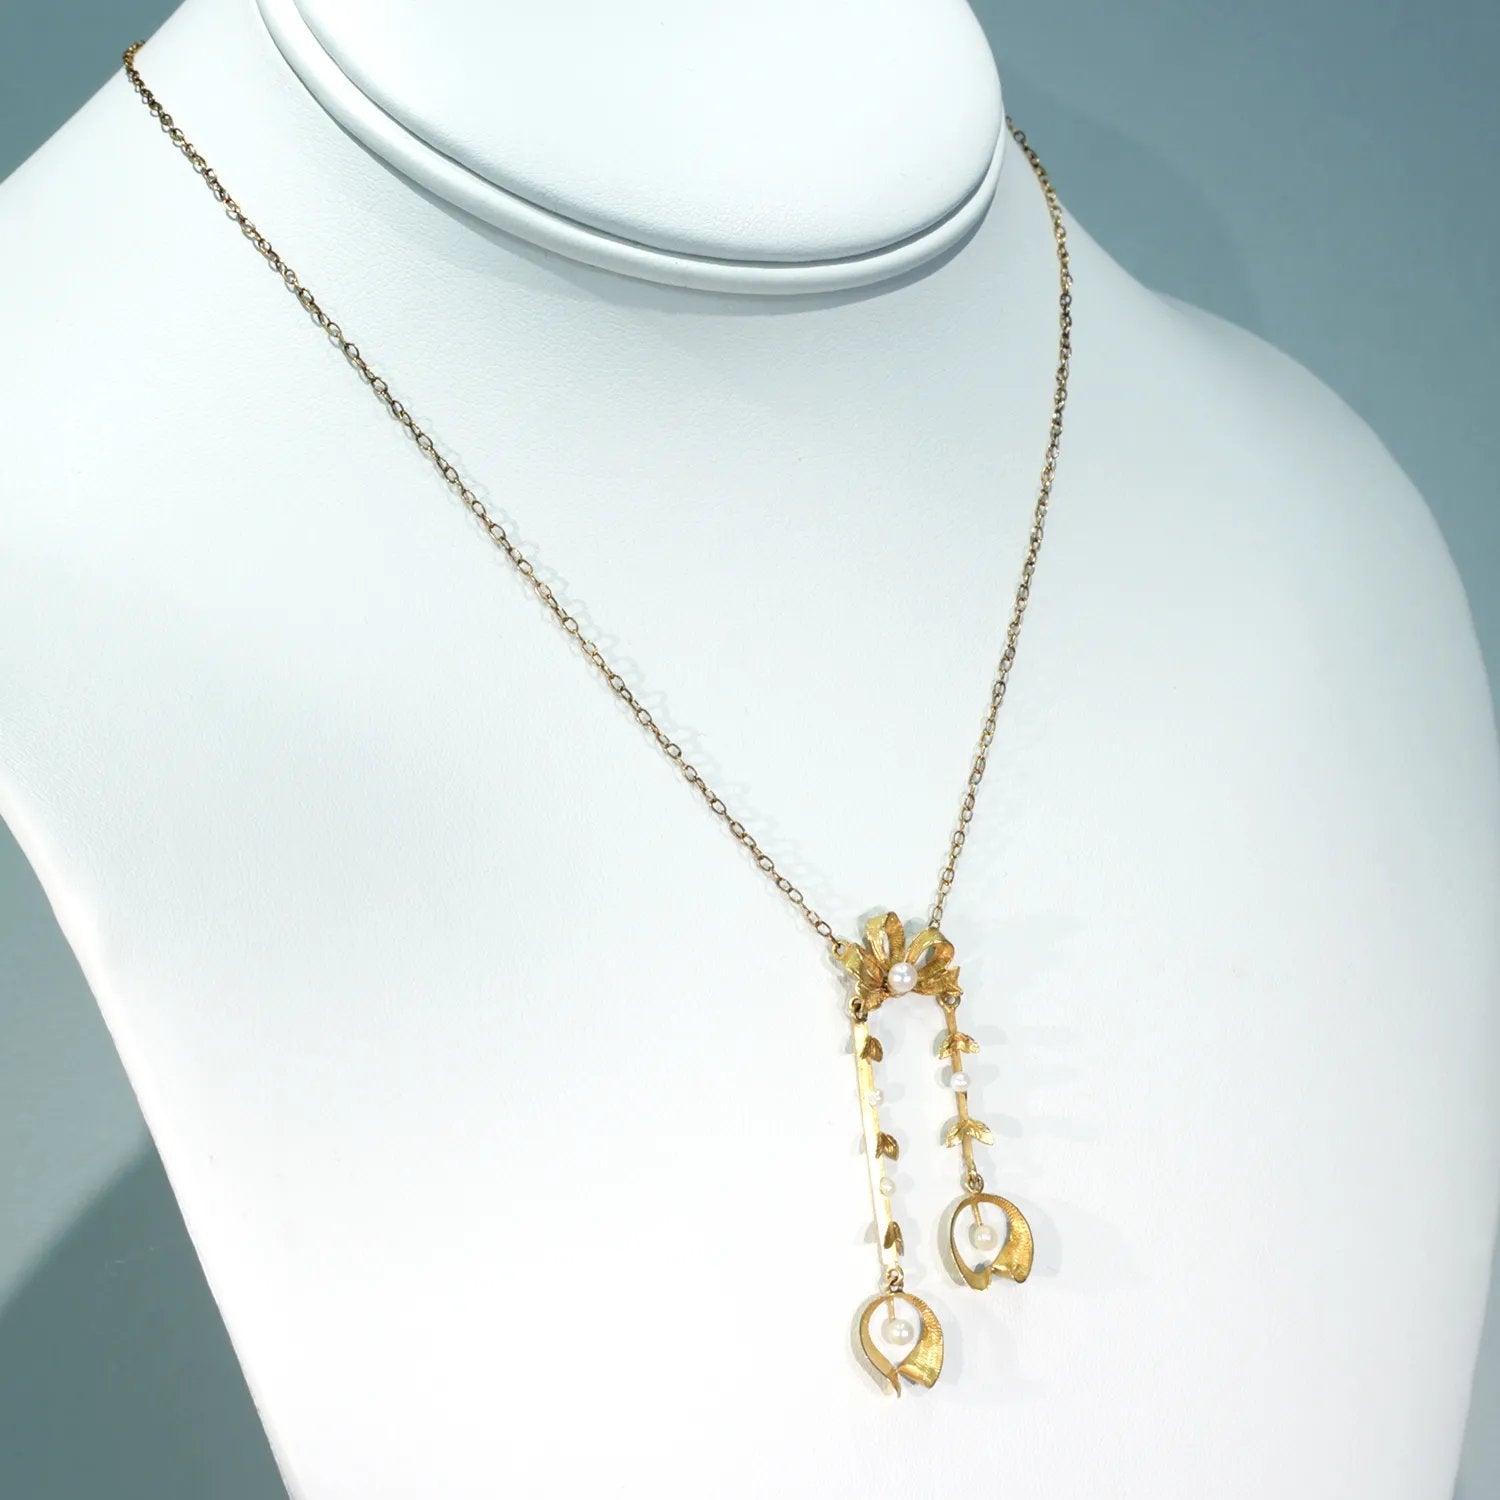 Antique French Art Nouveau Gold Pearl Necklace Mistletoe